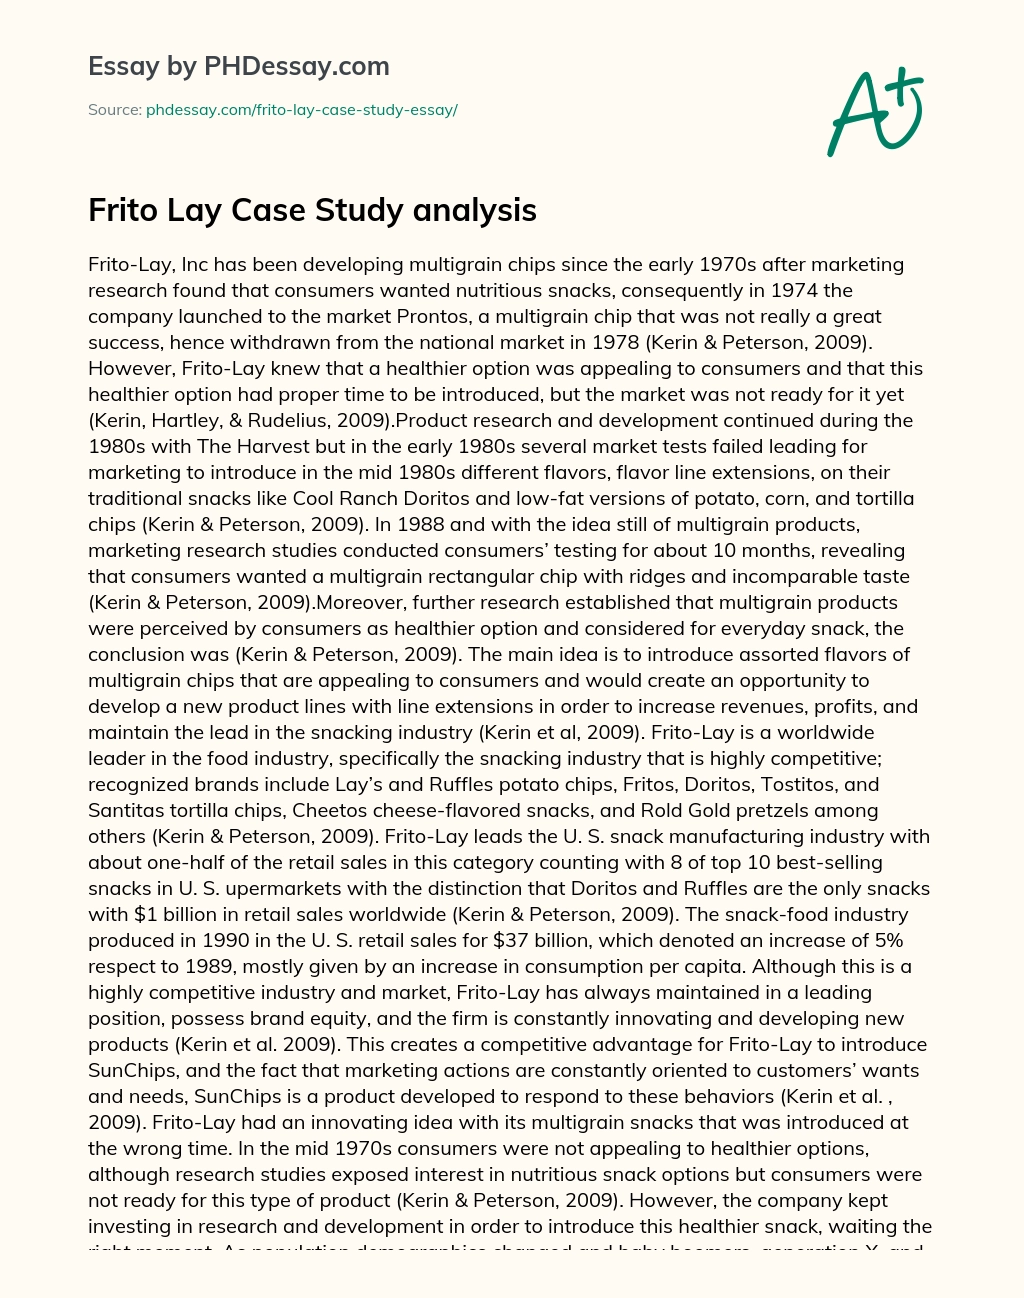 Frito Lay Case Study Analysis essay